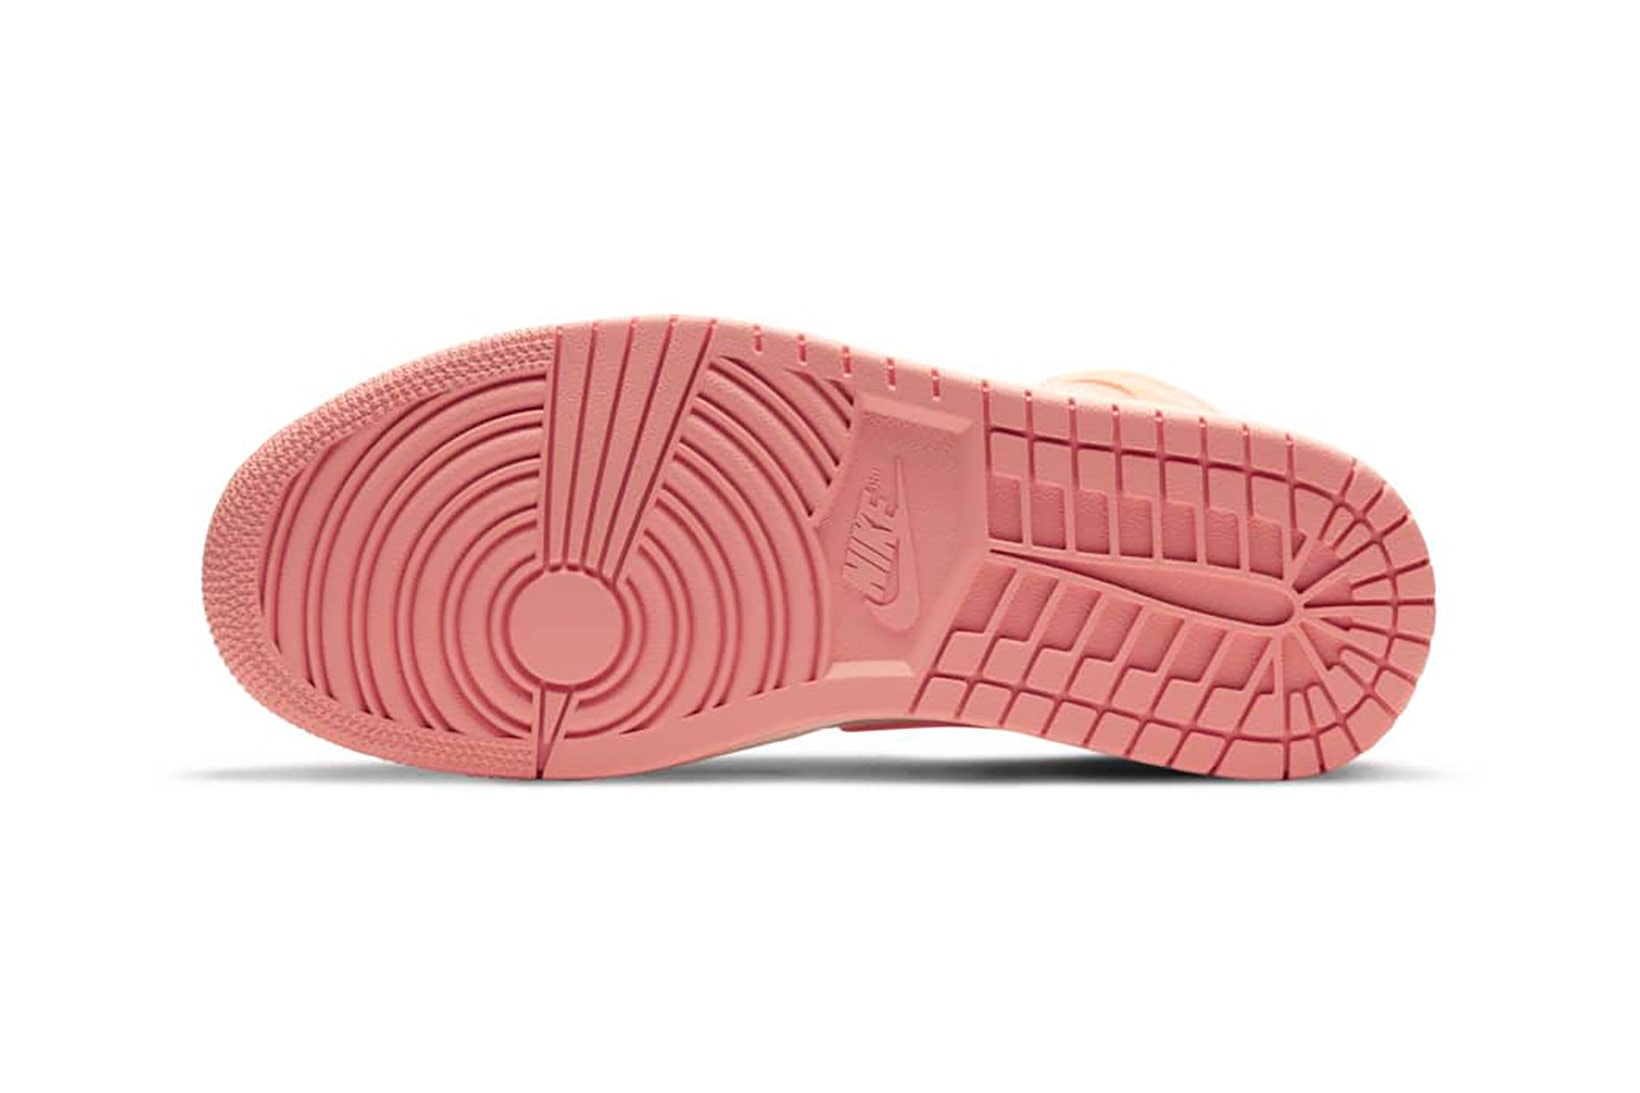 nike air jordan 1 aj1 mid womens sneakers apricot orange pink colorway shoes footwear sneakerhead kicks sole